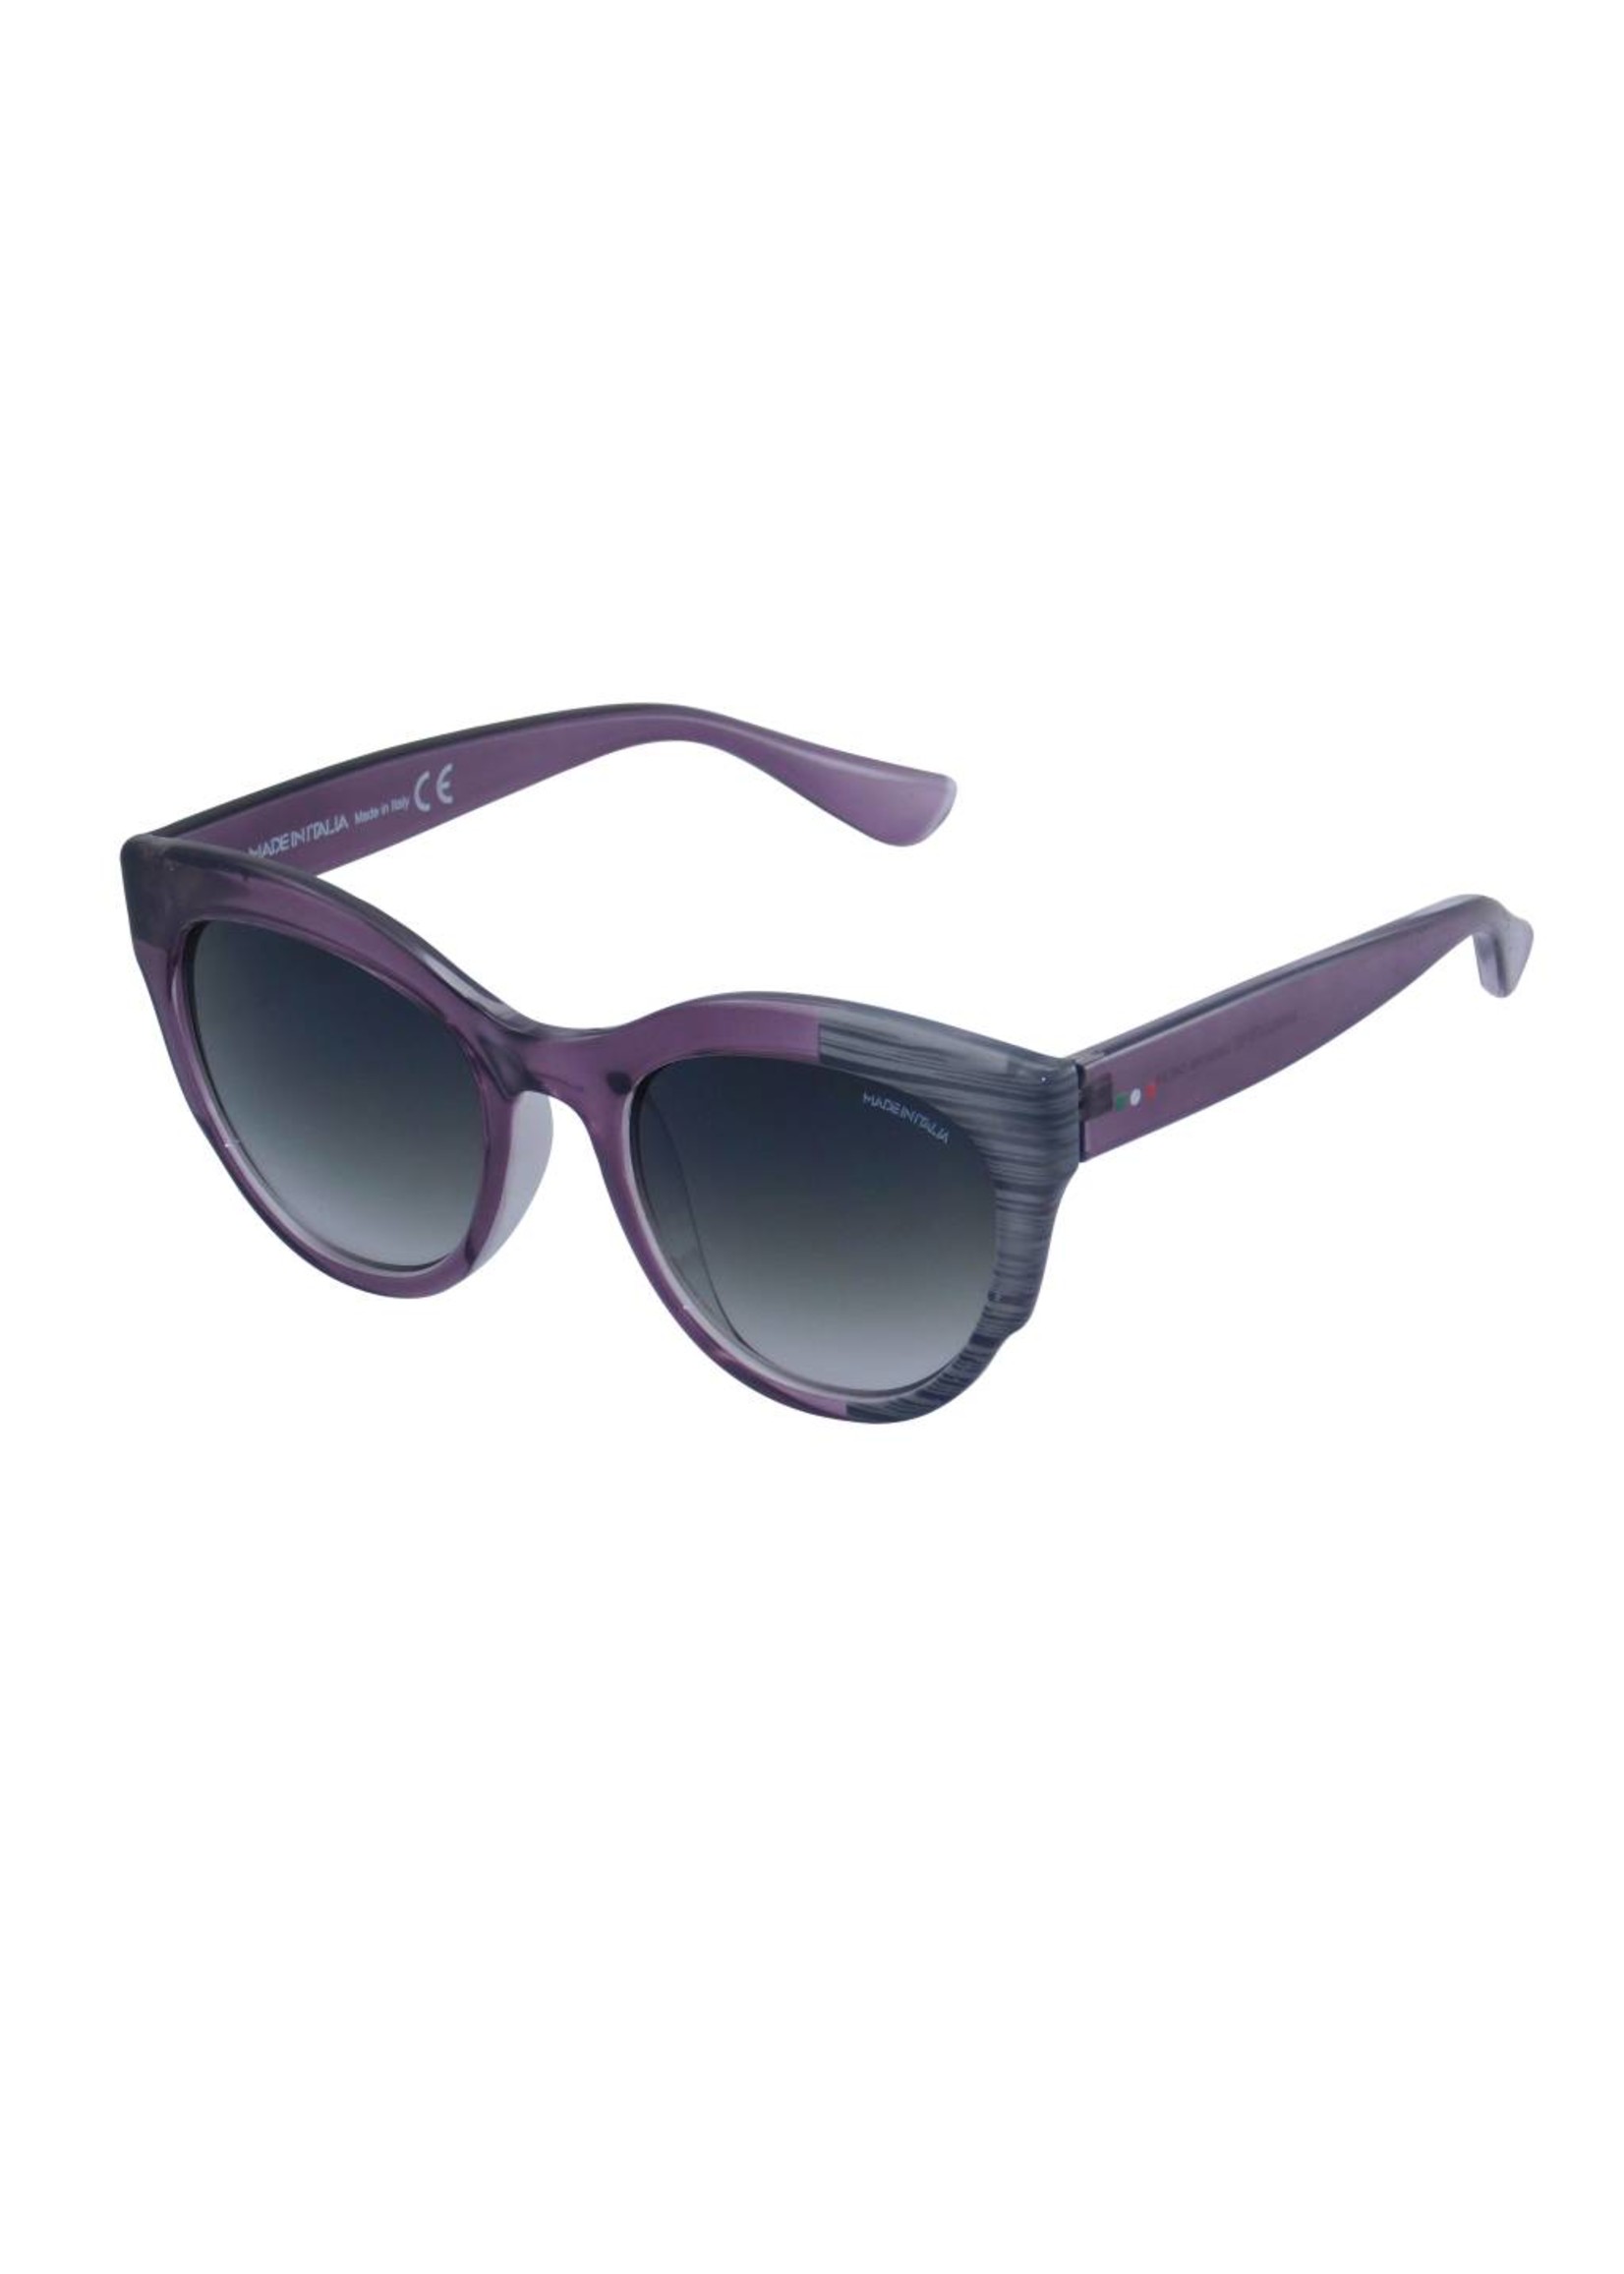 Made in Italia Abgetönte Violett Damen Sonnenbrille Rahmen 50er Jahre Style